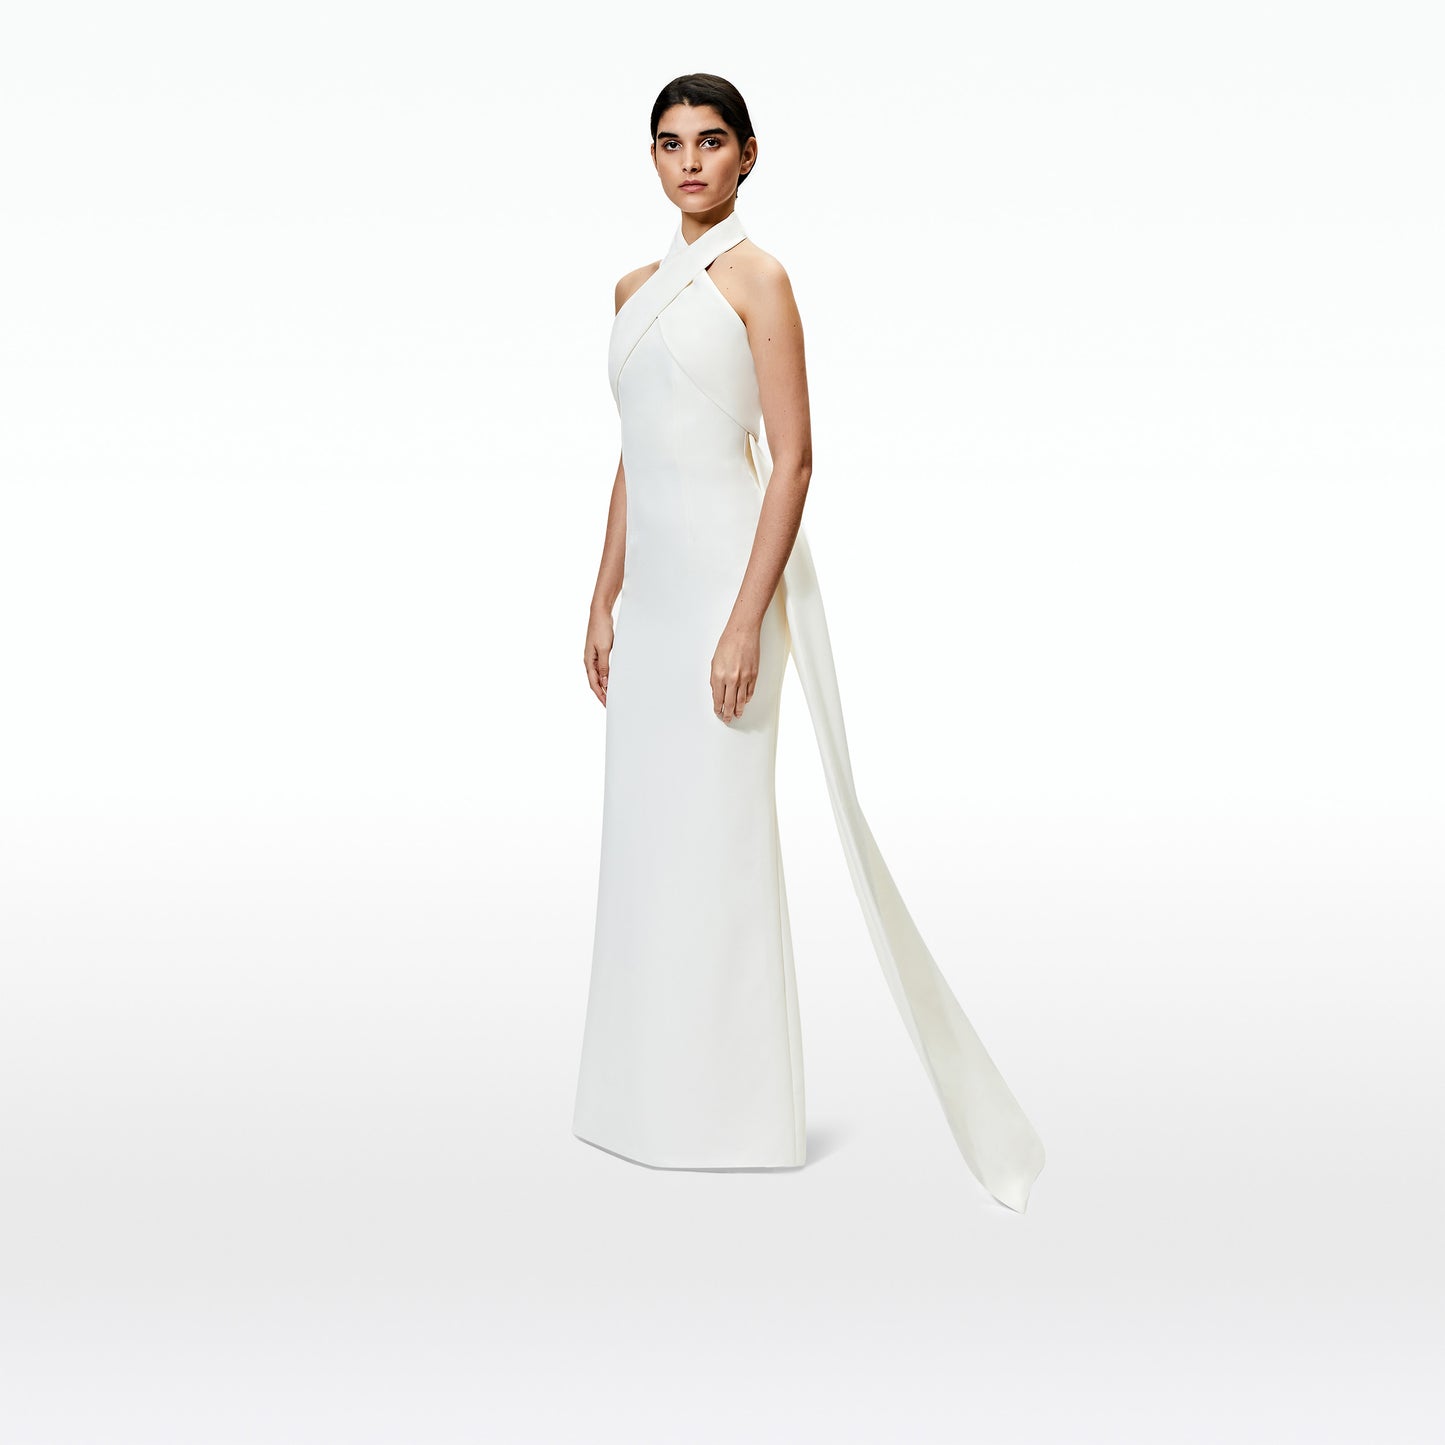 Avianna Cross Front Dress